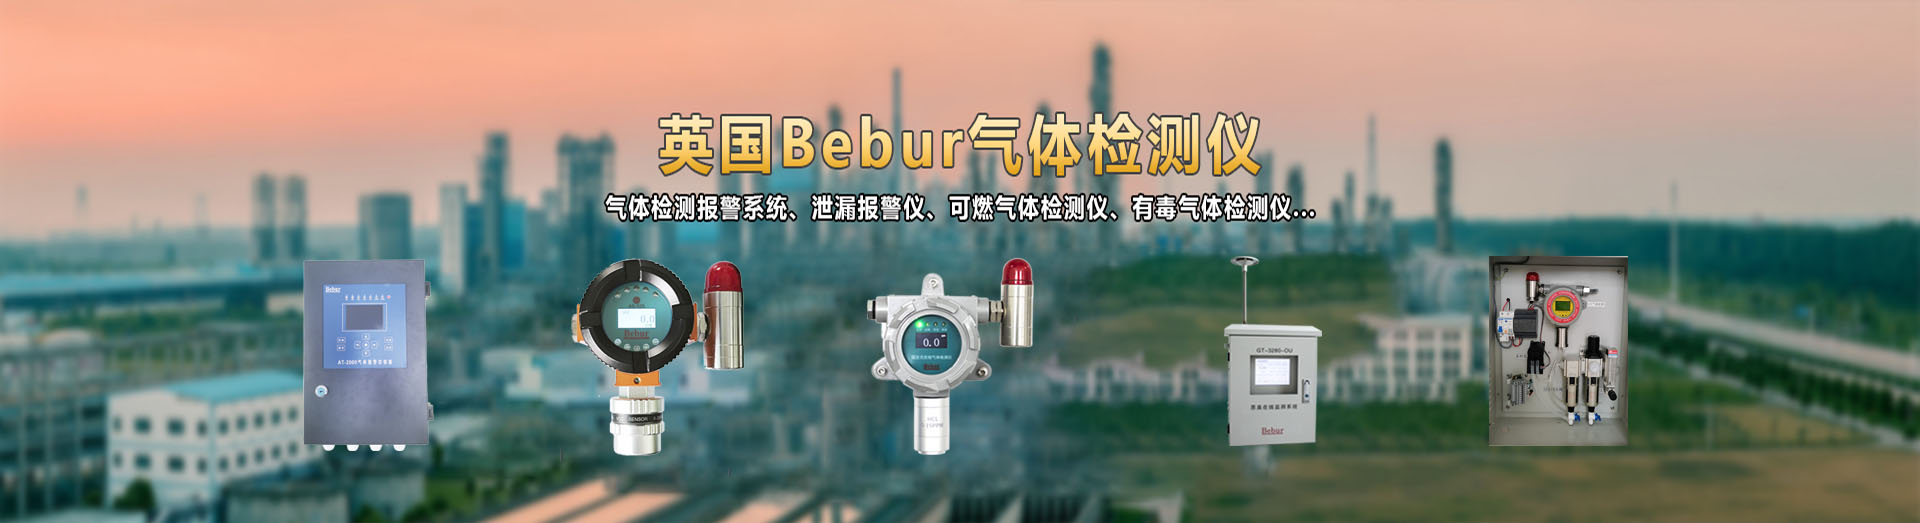 Bebur(巴倍尔)过氧化氢分析仪(双氧水分析仪)系列产品